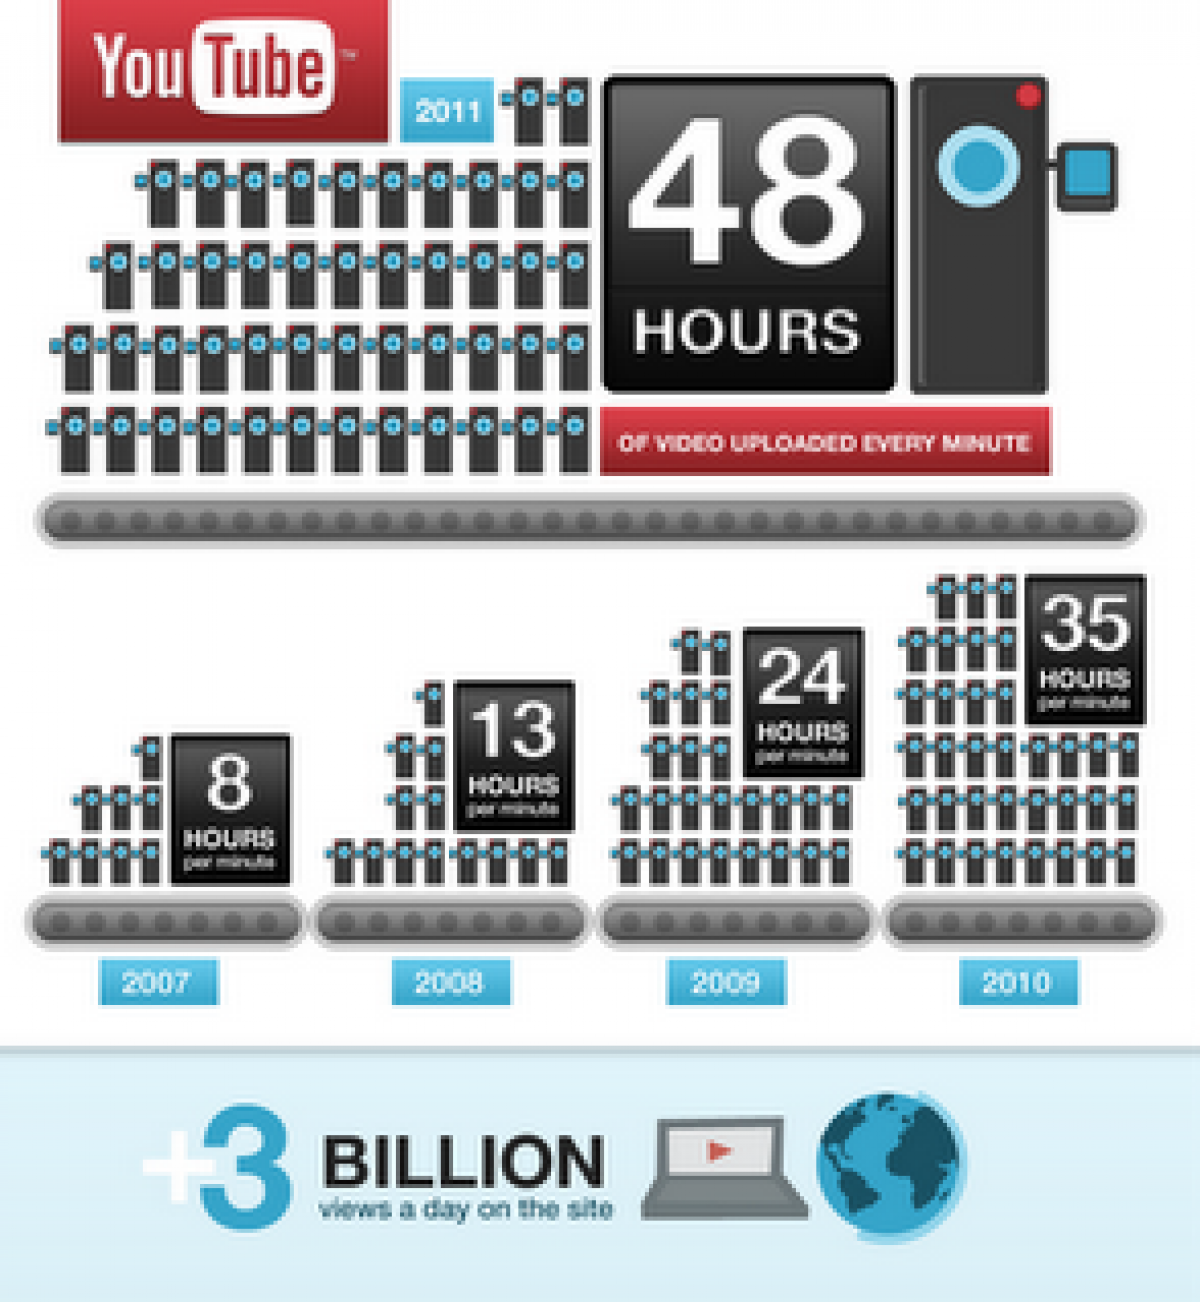 Chaque minute, les internautes envoient 48 heures de vidéo sur YouTube